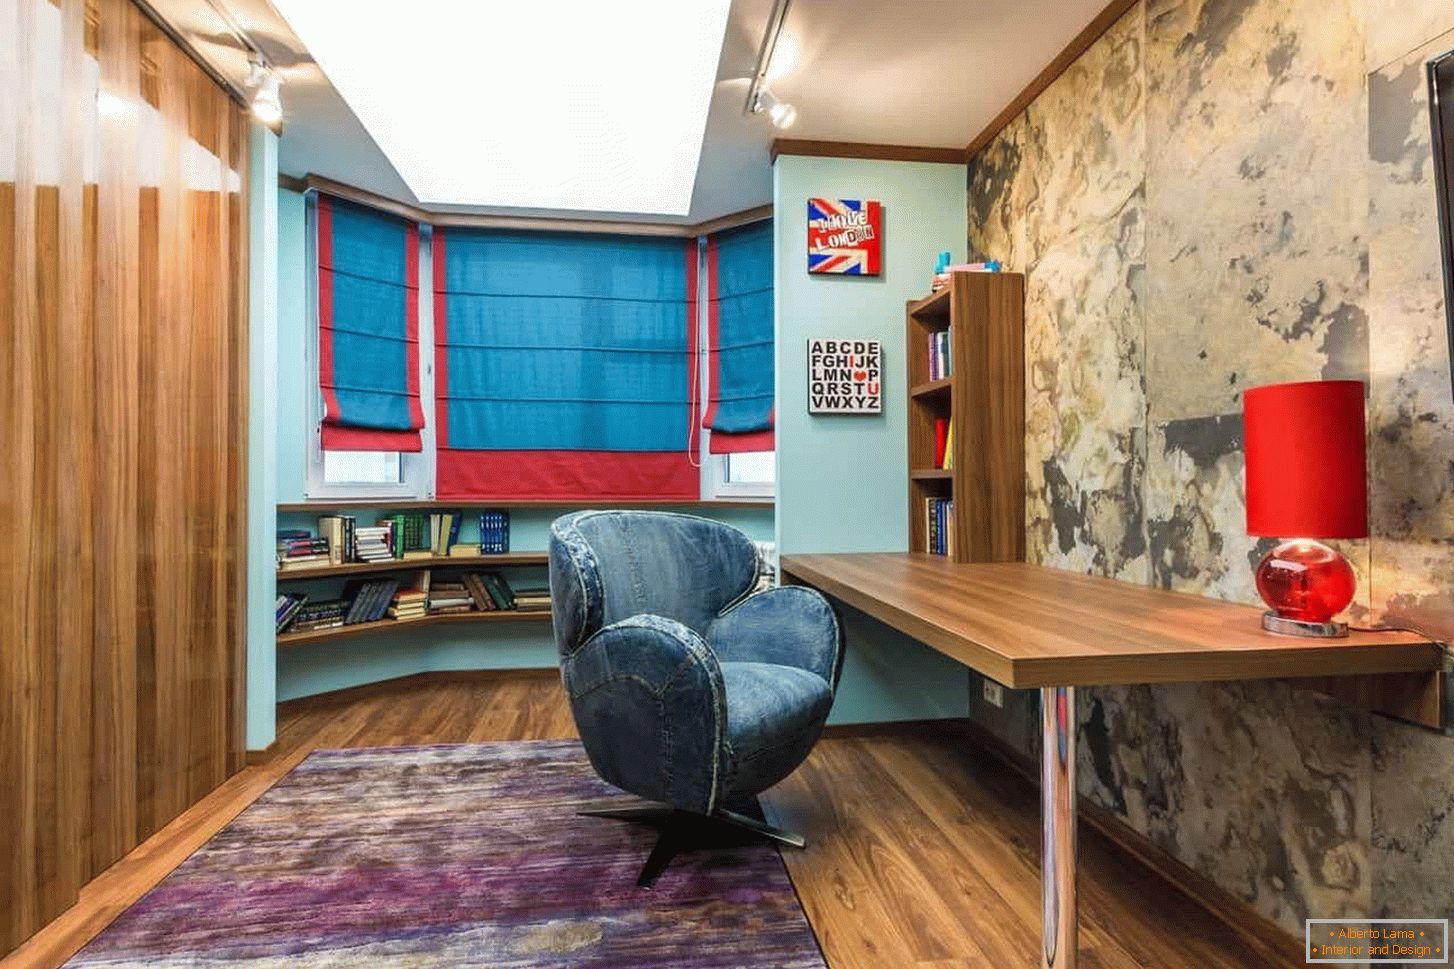 Una habitación larga hecha debajo del gabinete con elementos decorativos brillantes en el estilo grunge